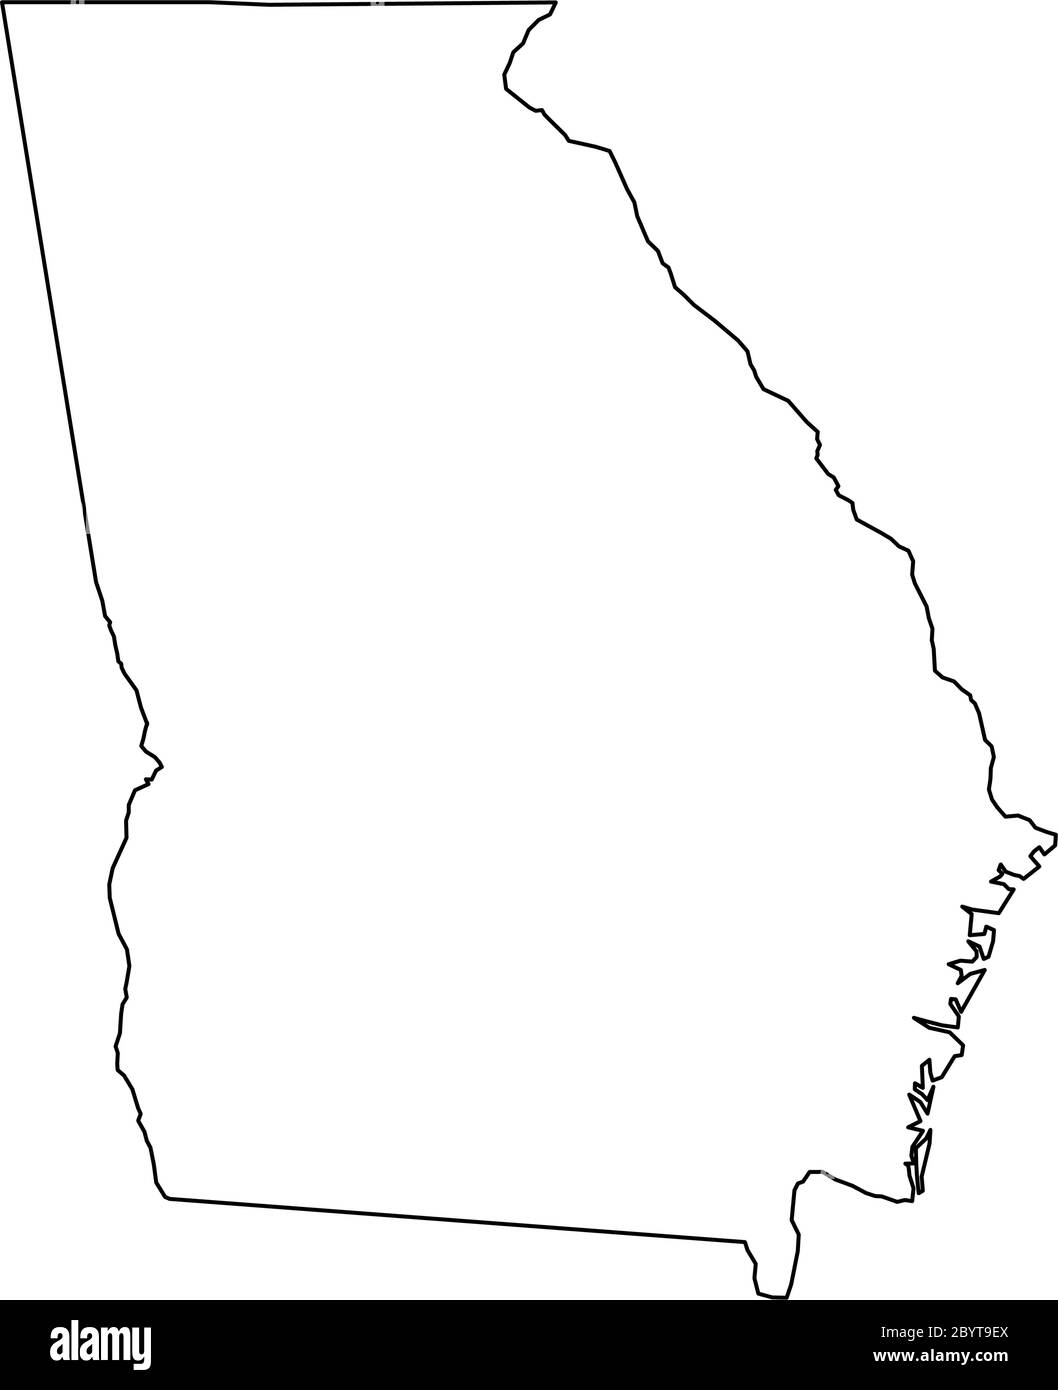 Georgia, State of USA - solide schwarze Übersichtskarte der Landesfläche. Einfache flache Vektorgrafik. Stock Vektor